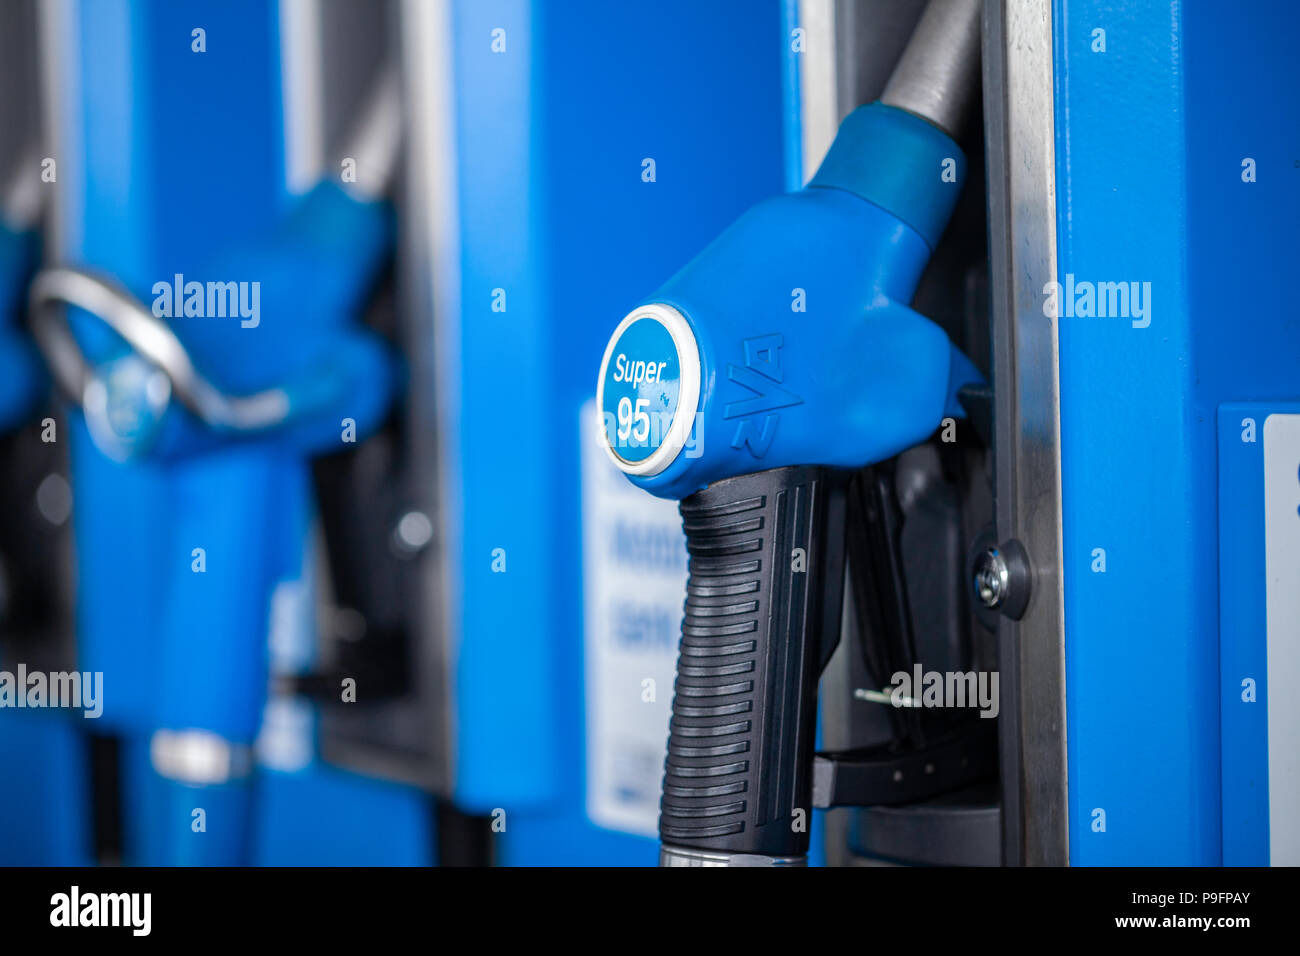 Nürnberg / ALLEMAGNE - Mars 11, 2018 : distributeur de carburant à l'essence super 95, à partir de la station essence Aral. Leman est une marque de carburants automobiles. Banque D'Images